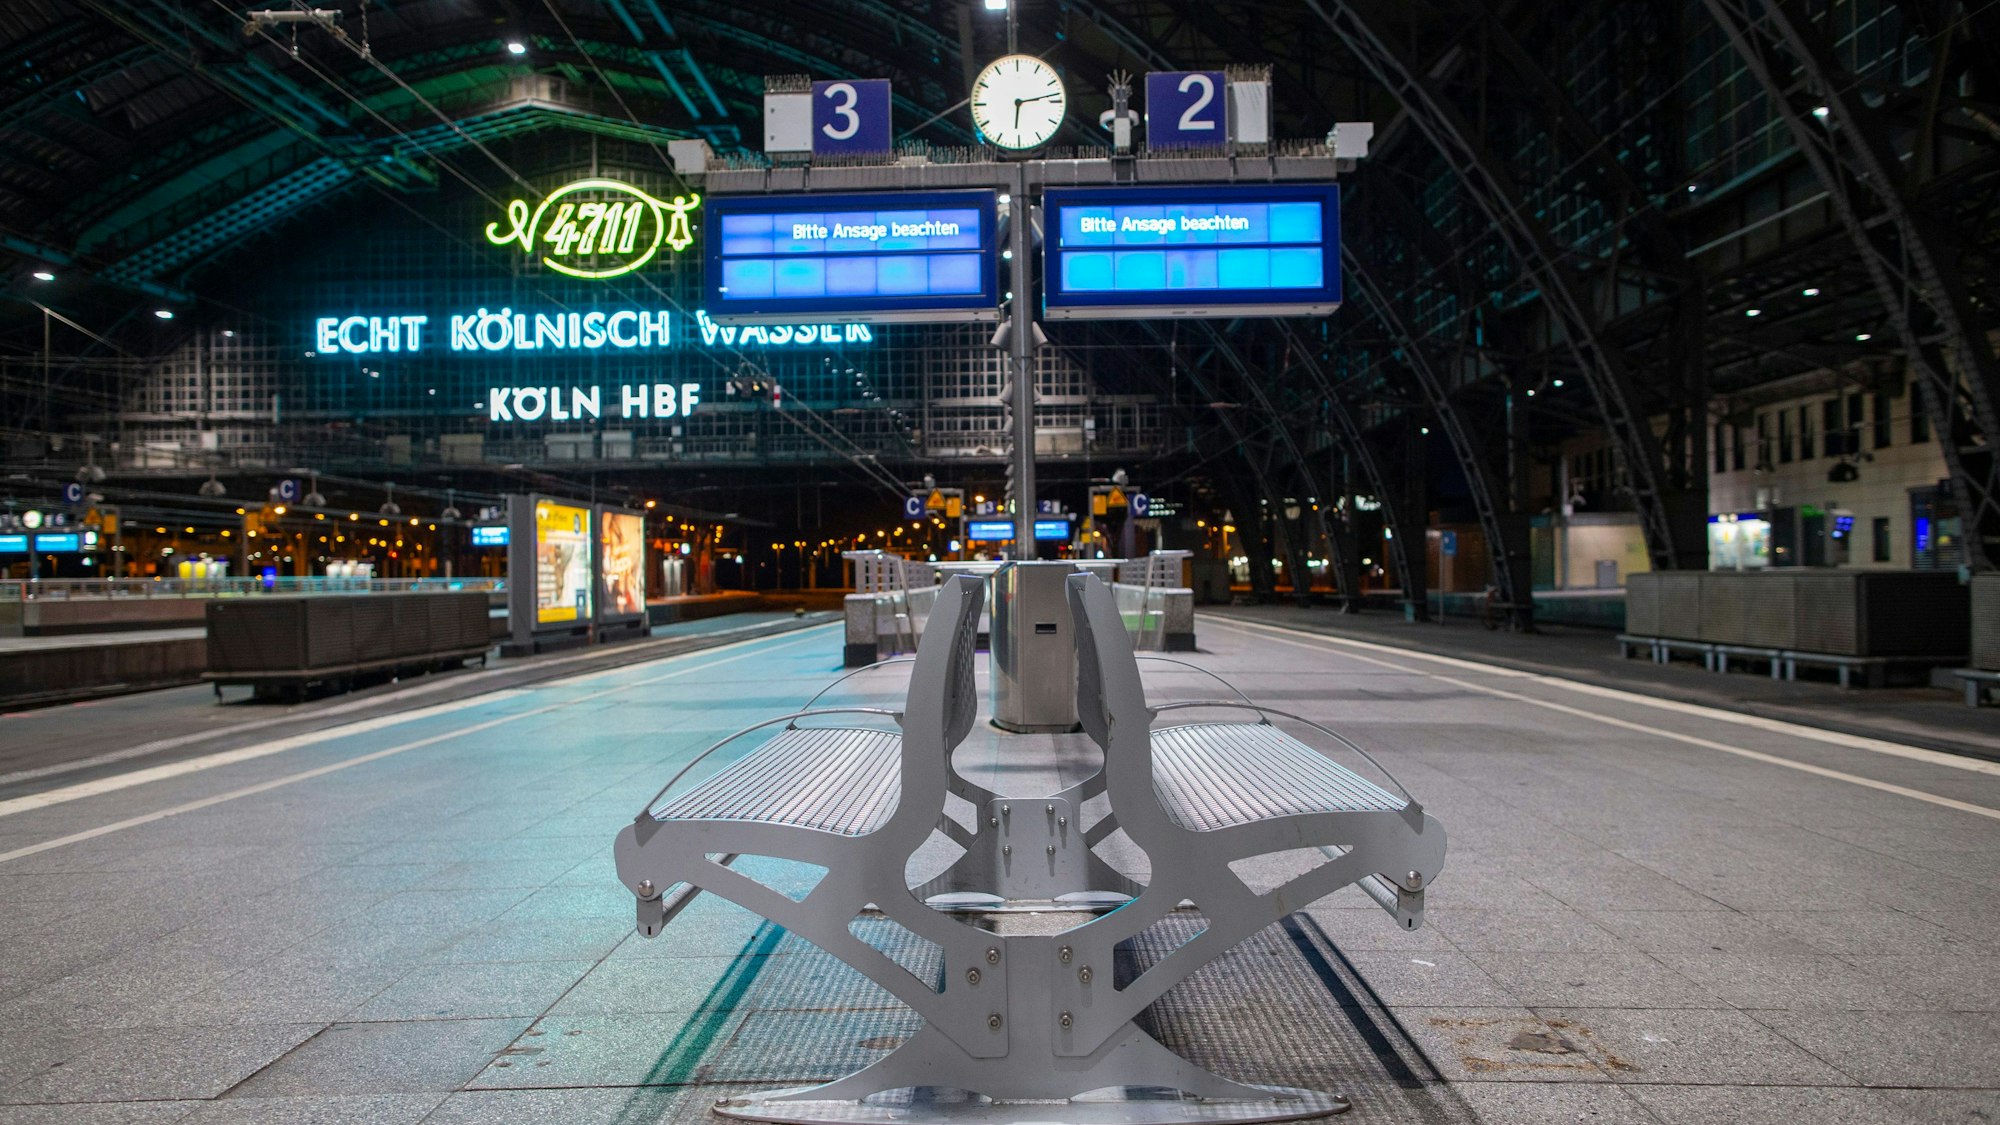 Auf einer Anzeigetafel wird im nahezu menschenleeren Kölner Hauptbahnhof auf die Einstellung des Zugverkehrs hingewiesen.